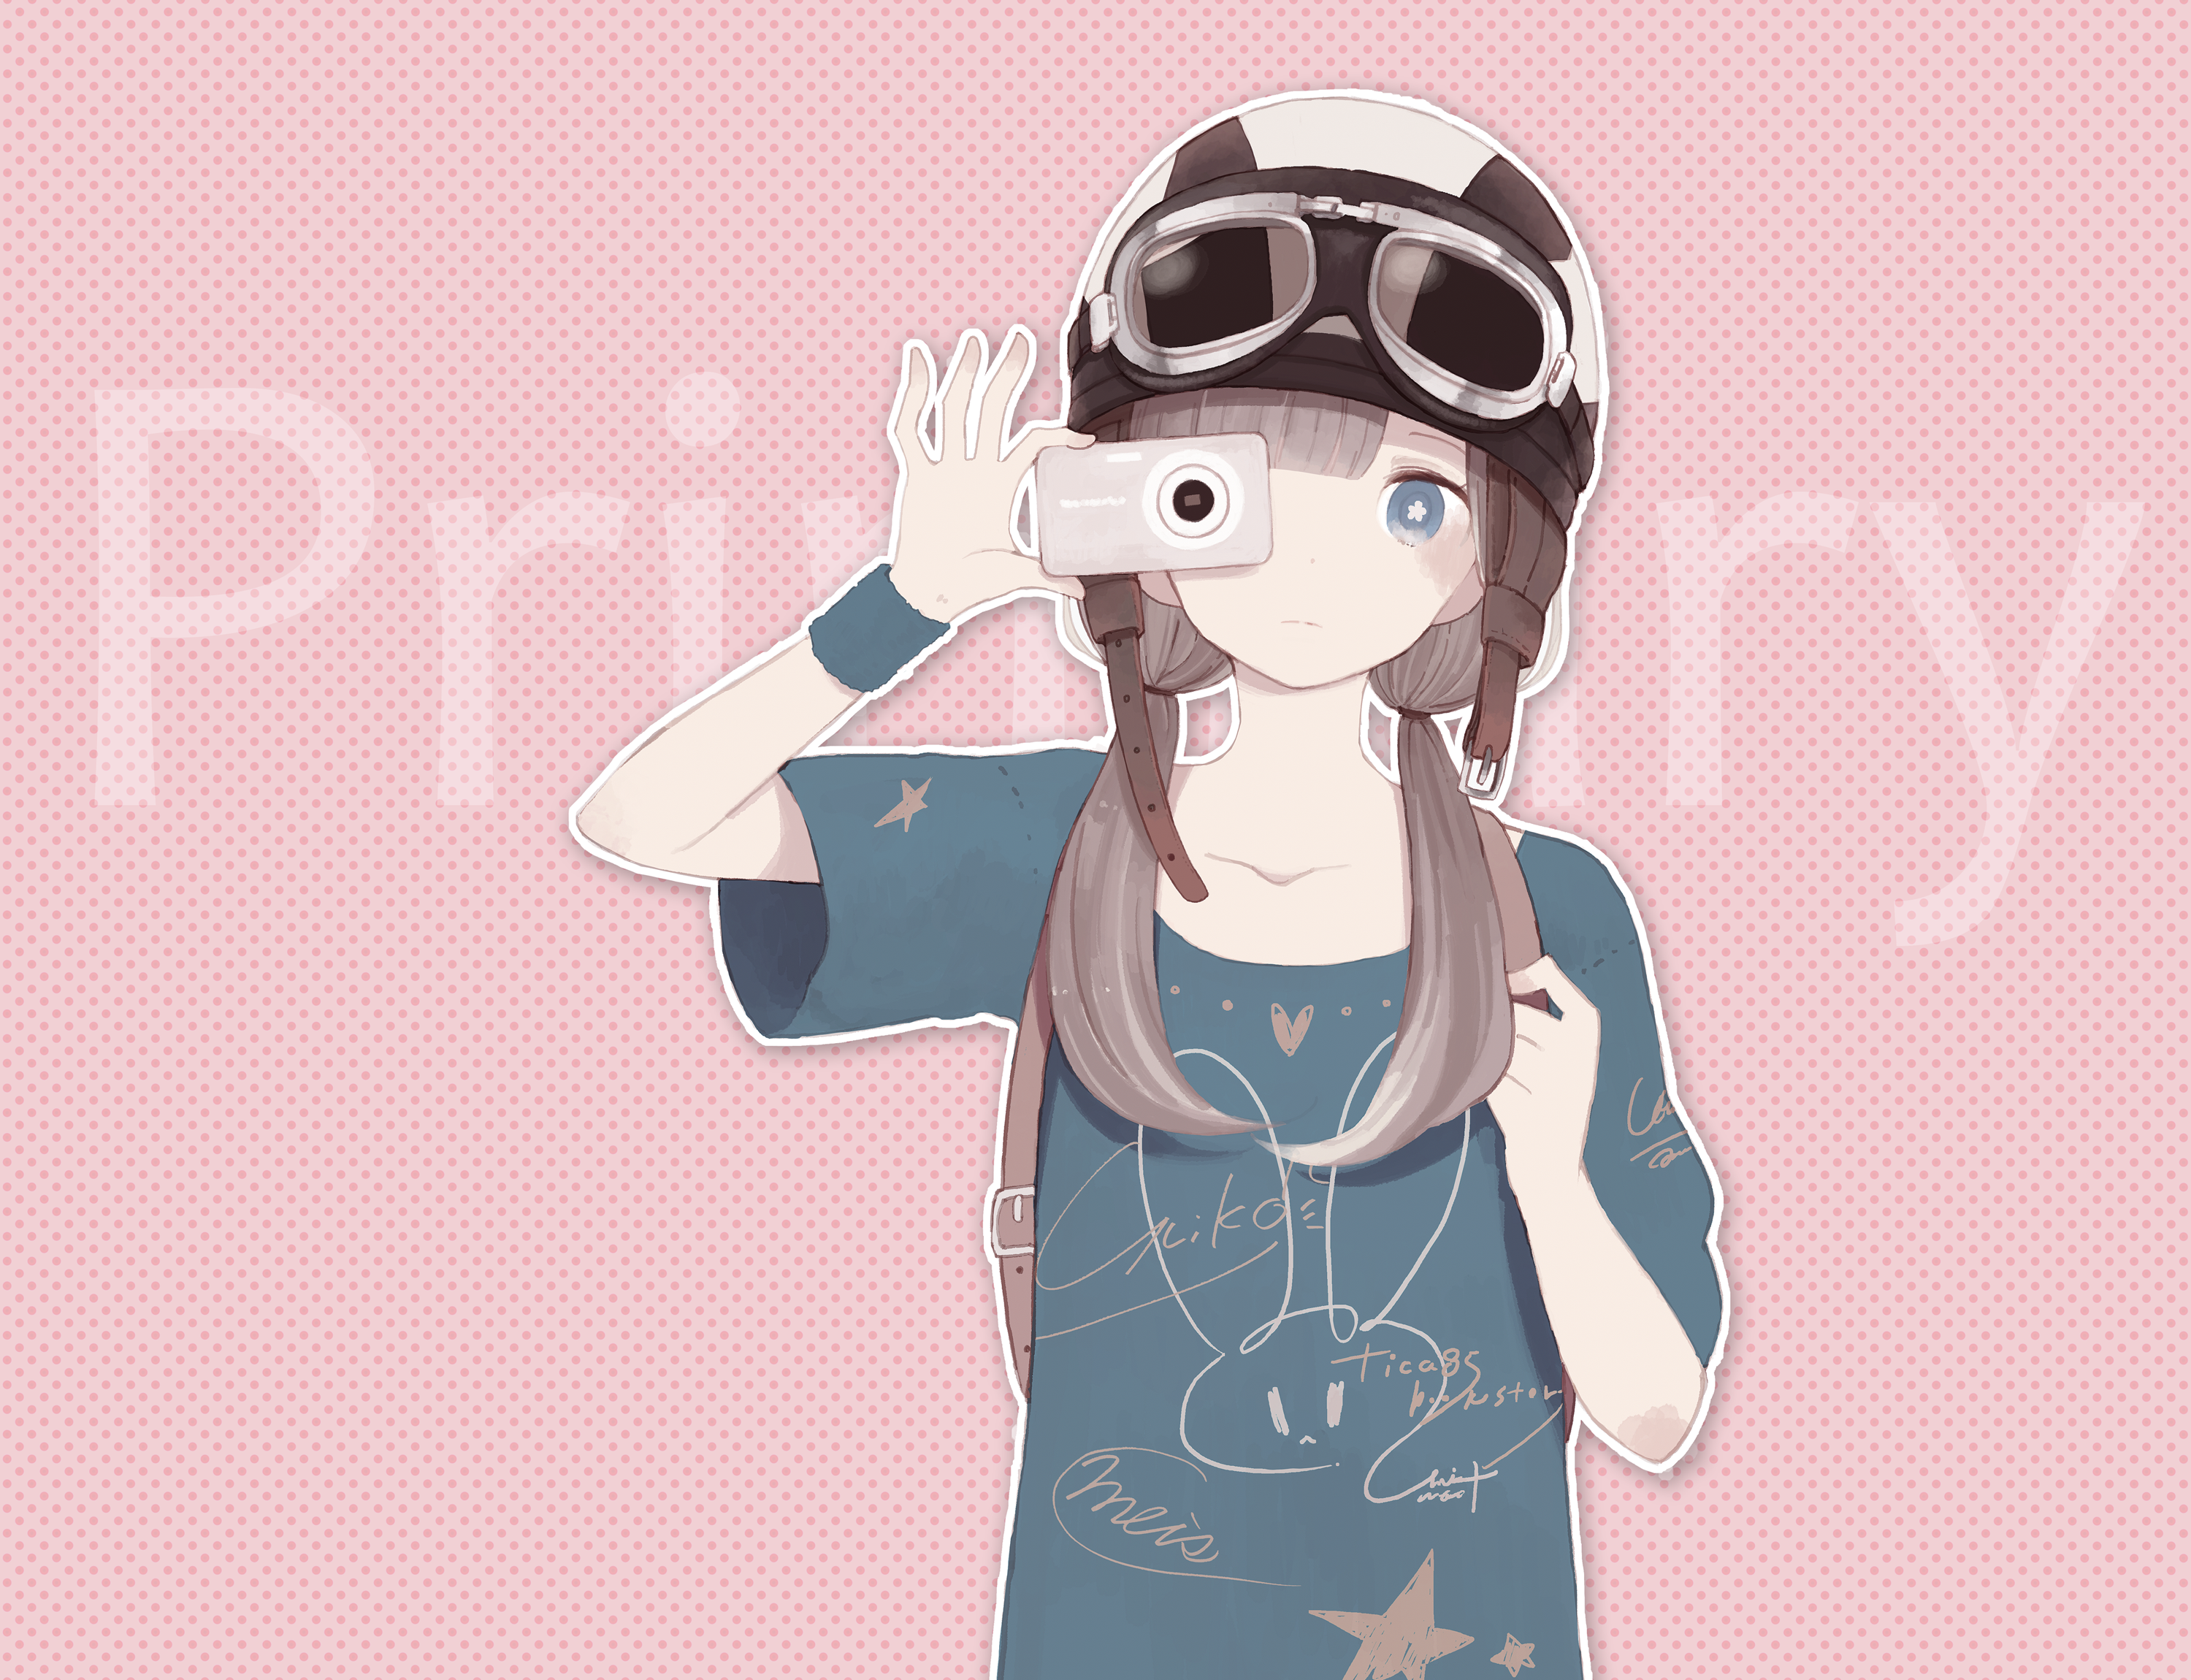 yuiko / Primary